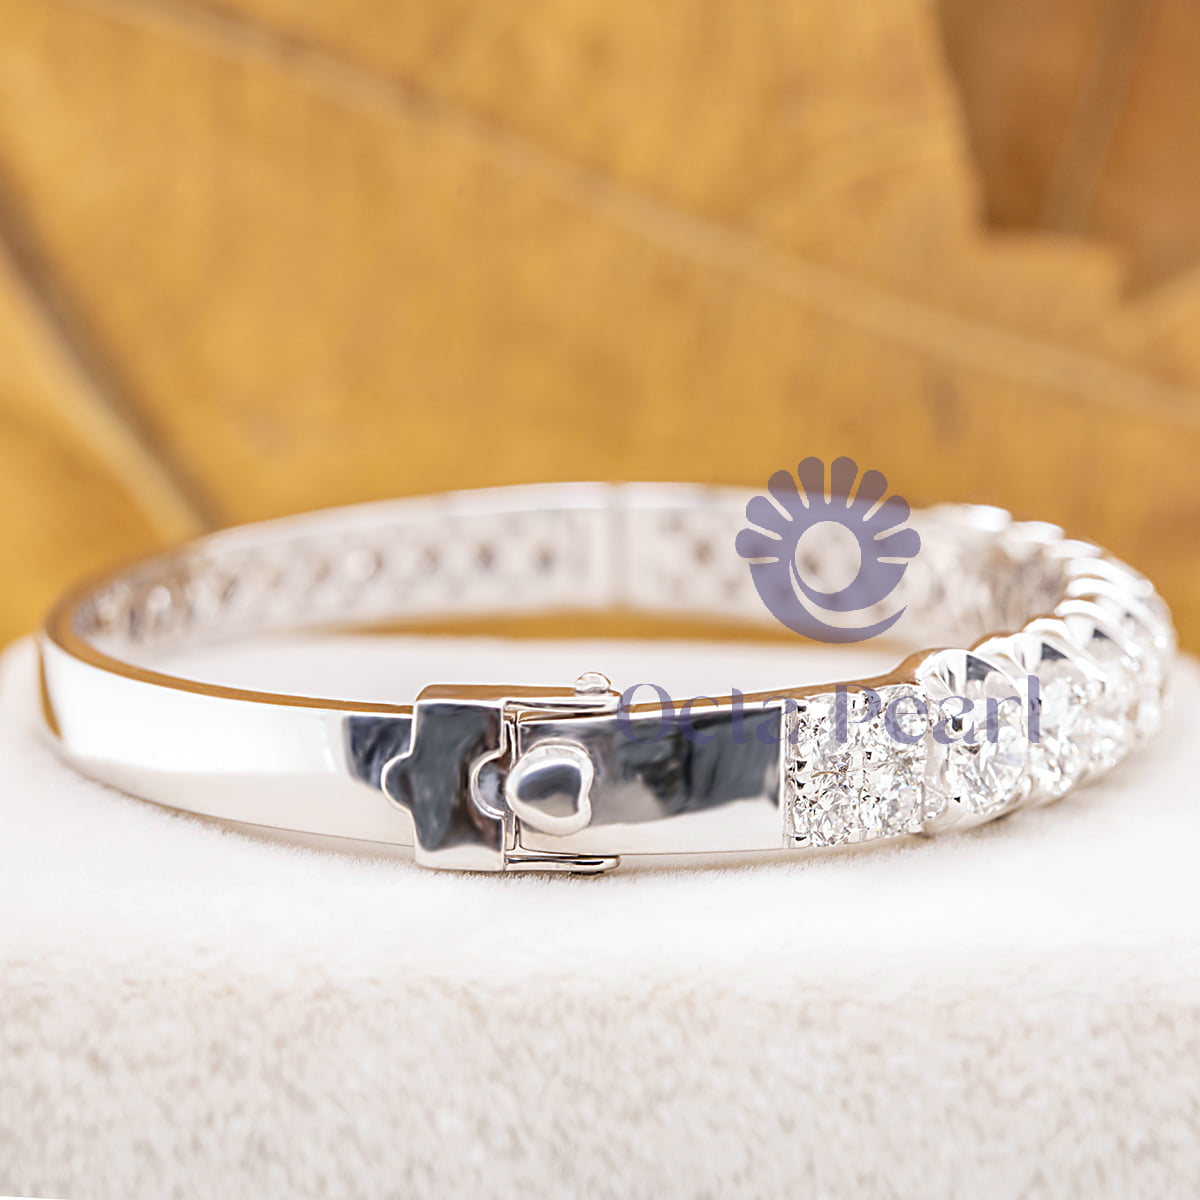 Women Or Men's Round Cut Moissanite Bangle Bracelet For Wedding Gift